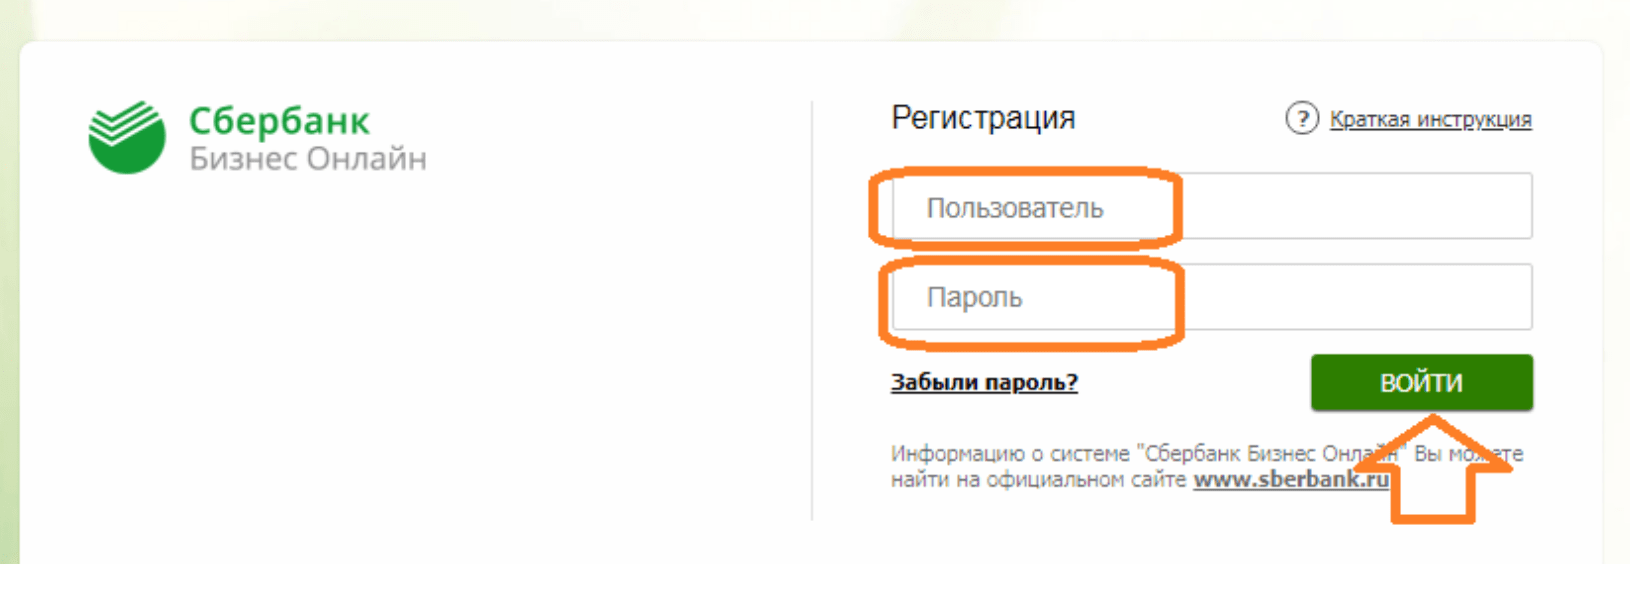 sberbank ru бизнес онлайн вход в личный